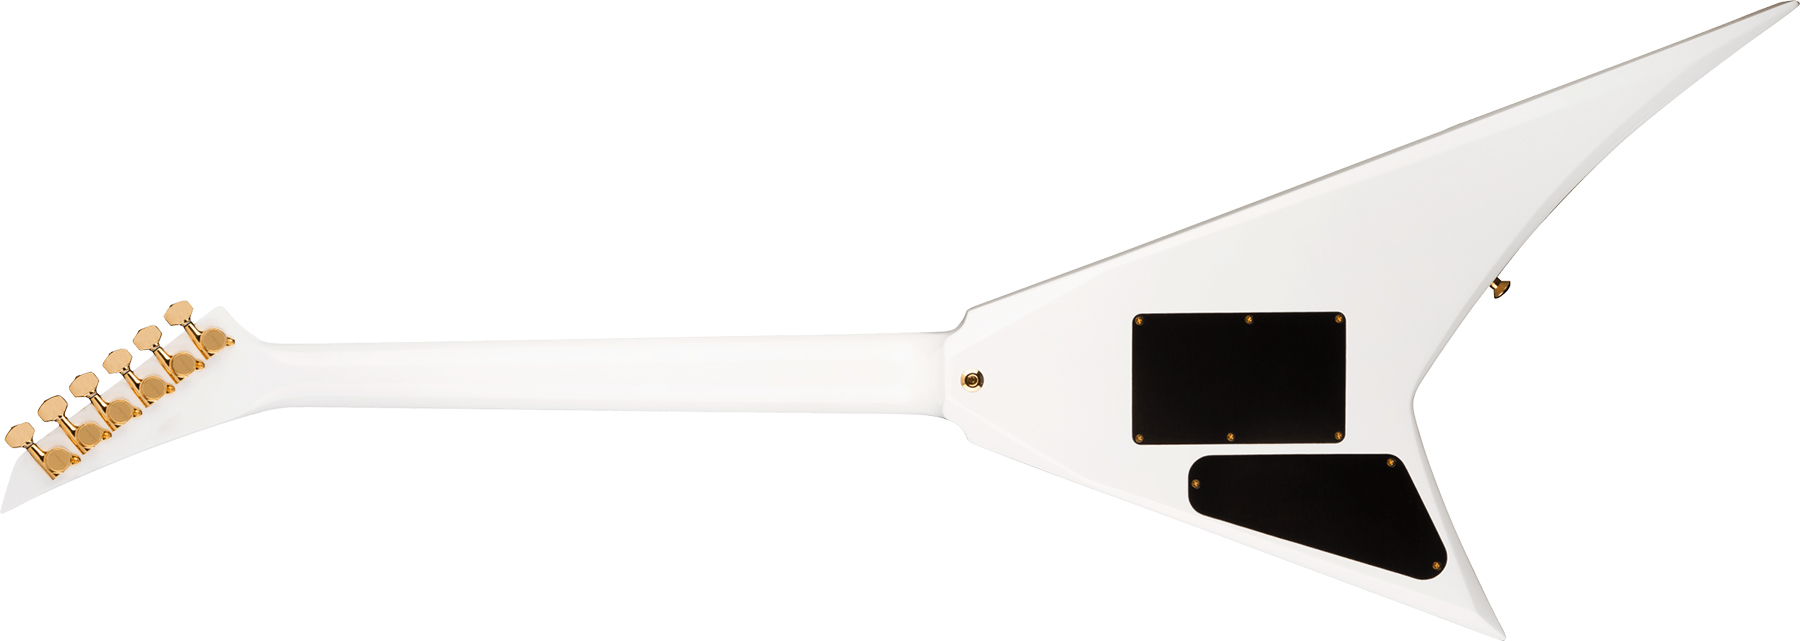 Jackson Rhoads Rr24 Hs Concept Hst Seymour Duncan Fr Eb - White With Black Pinstripes - Guitare Électrique MÉtal - Variation 1